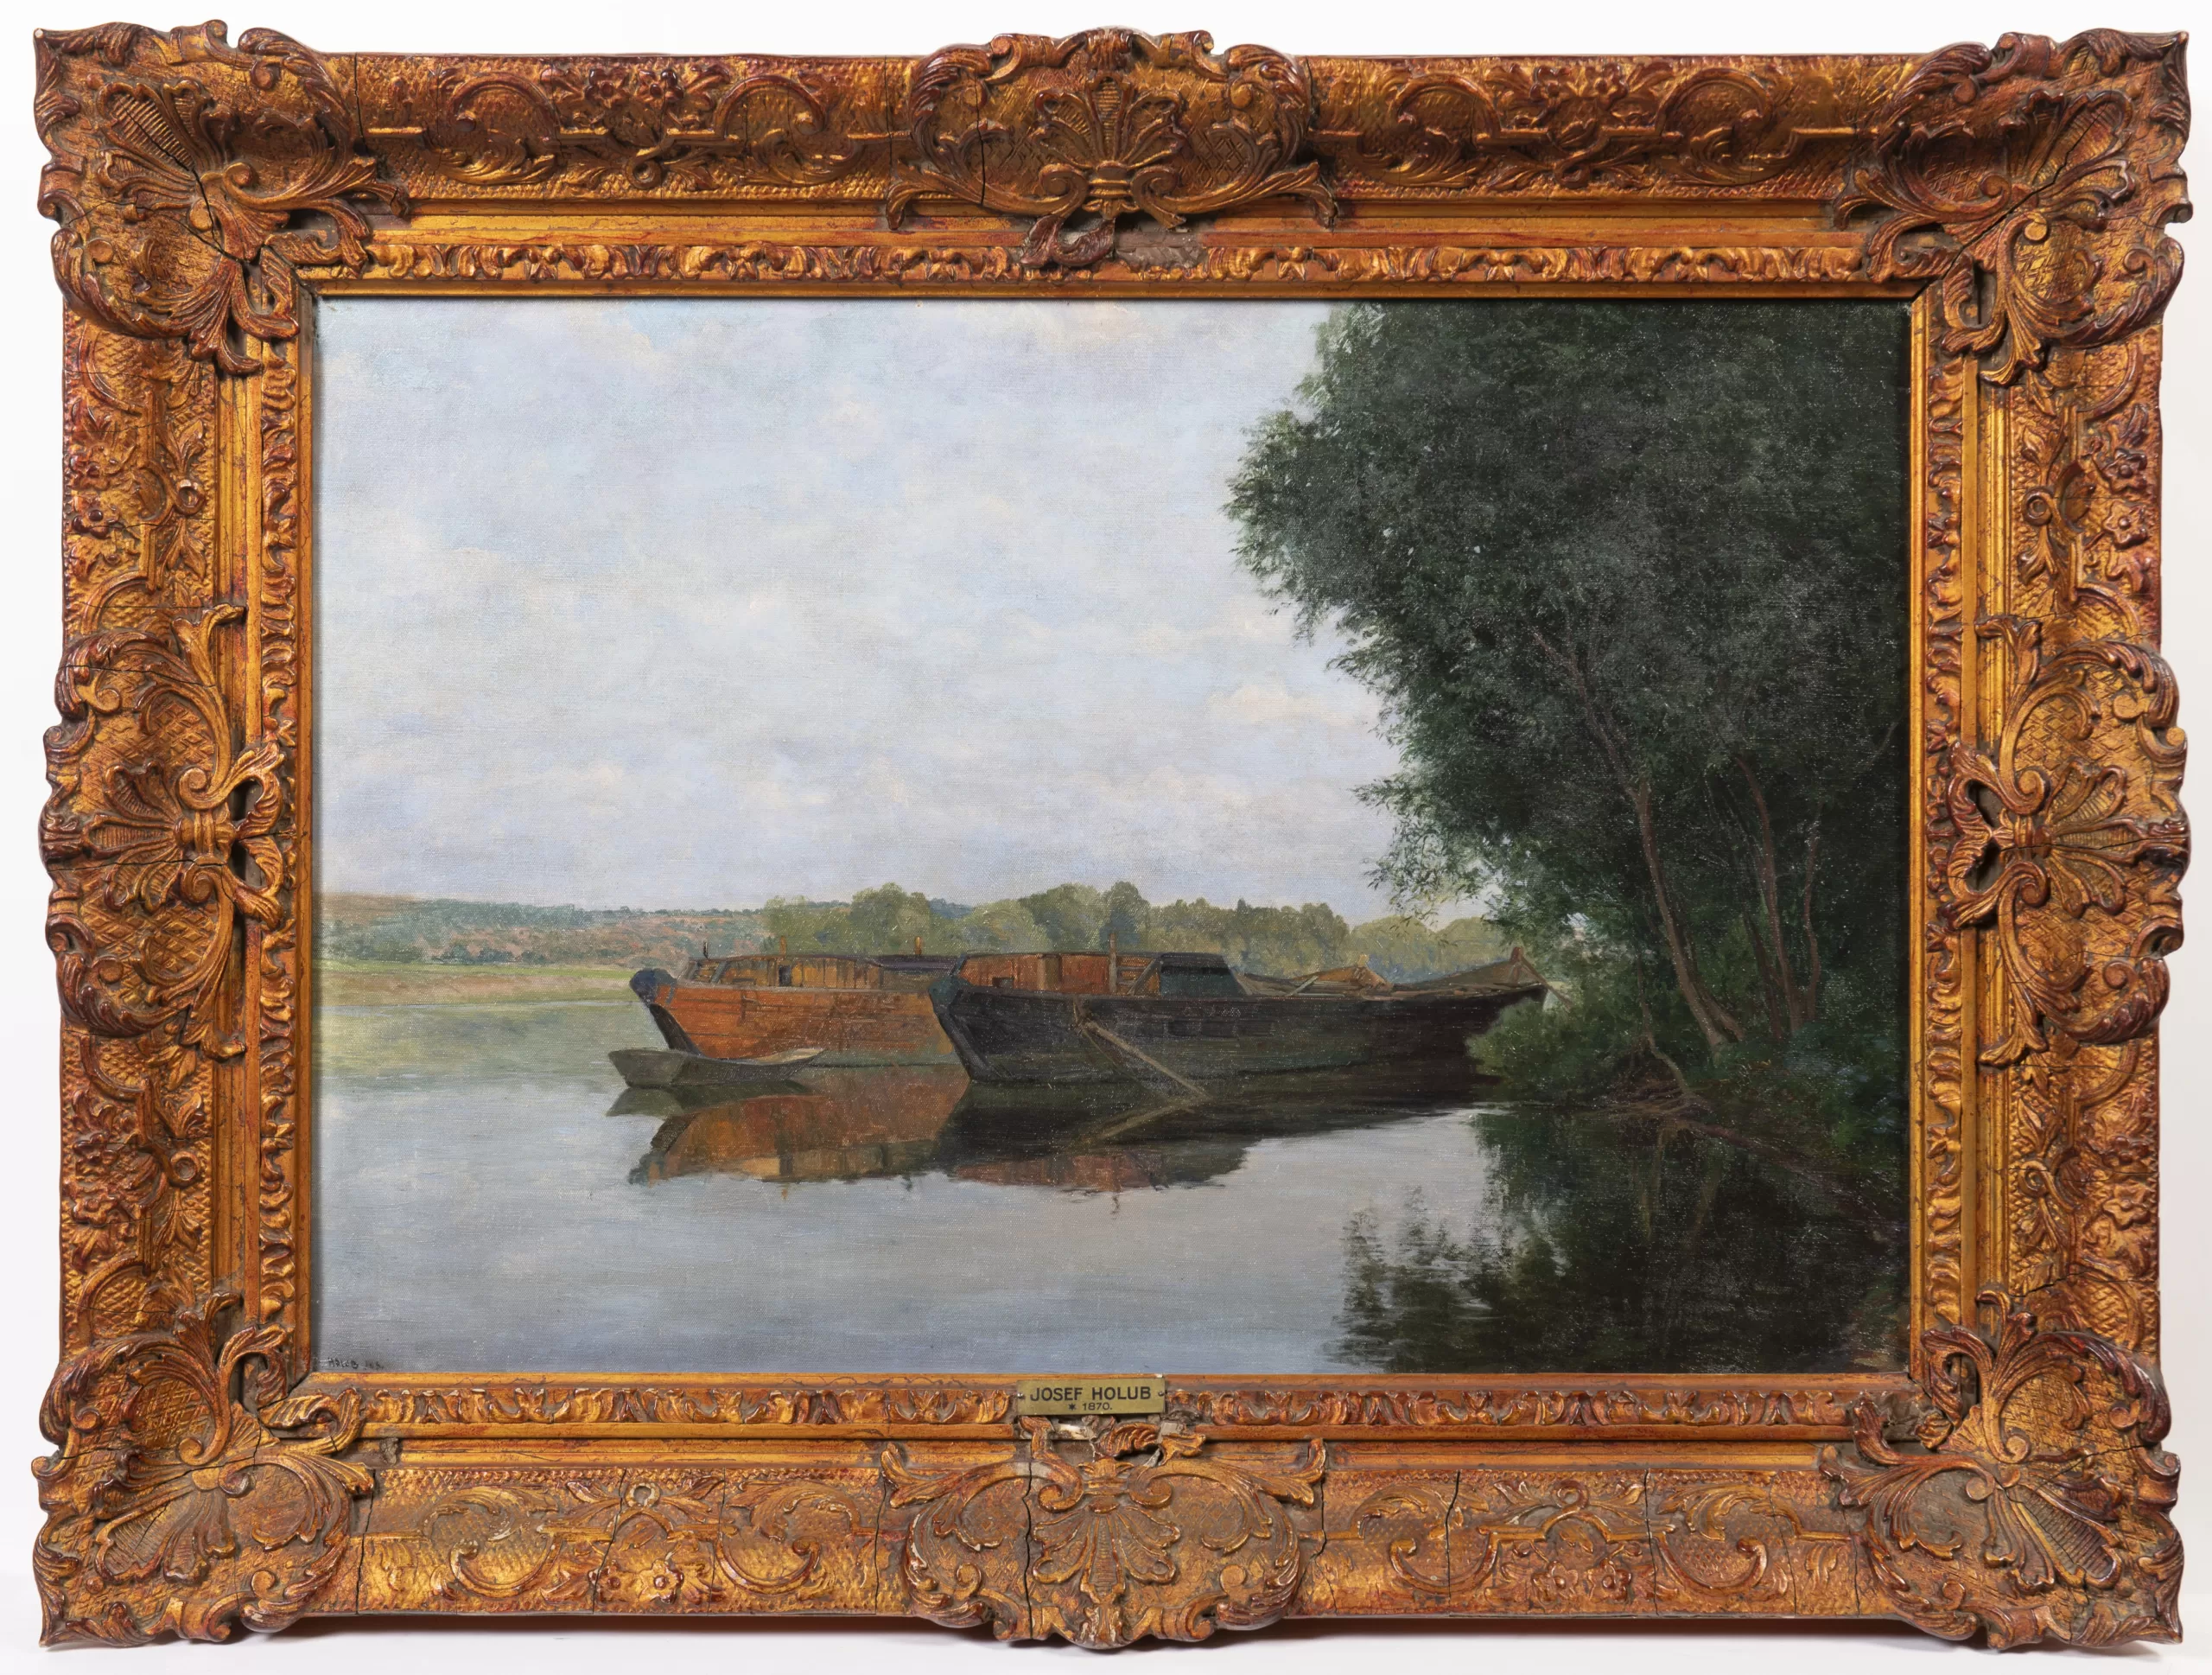 Přední strana obrazu, Holub Josef (1870-1957), Lodě na Vltavě (pískové lodě od Železničního mostu)